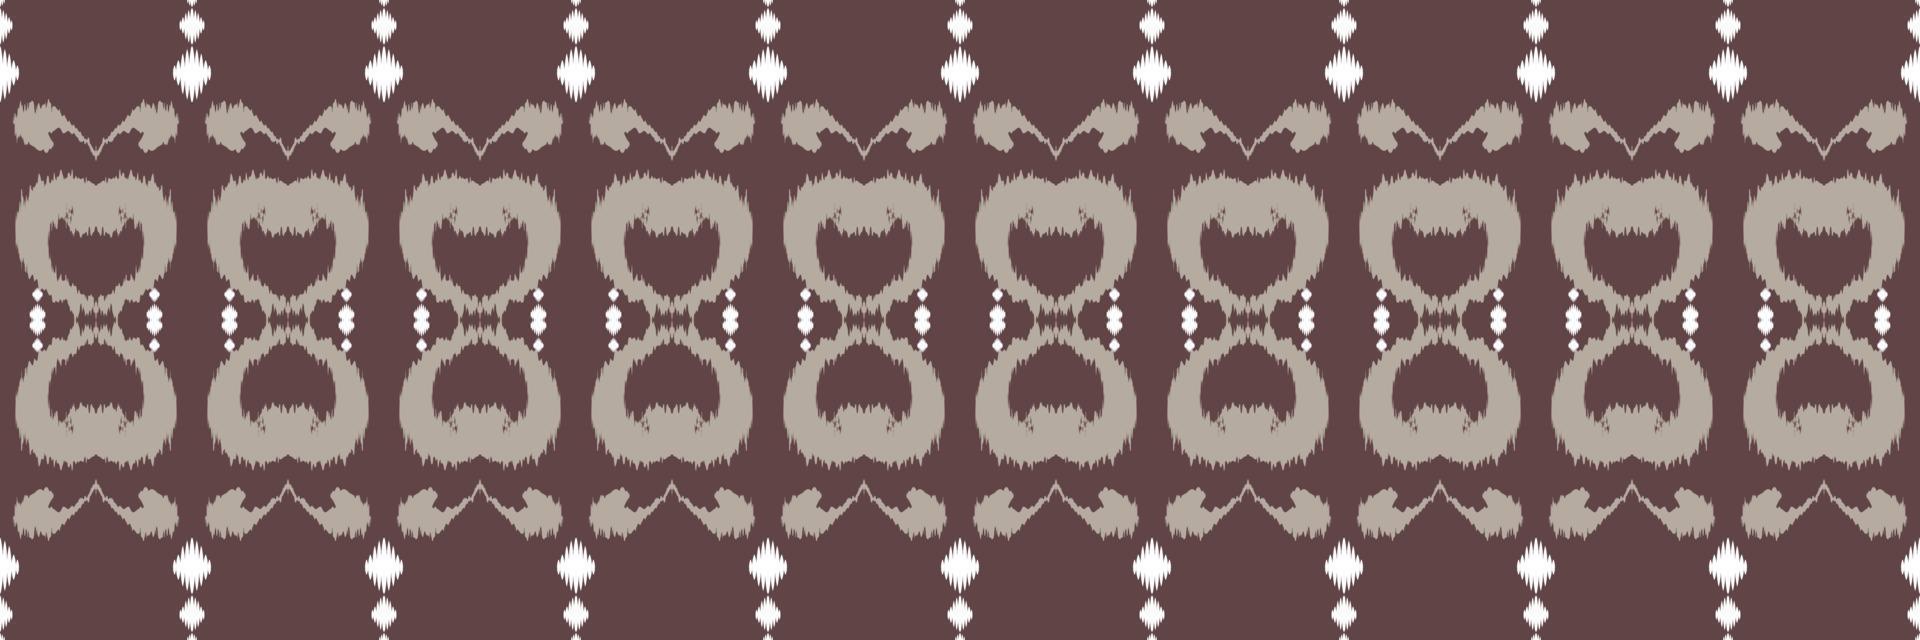 Ikat vector tribal backgrounds Seamless Pattern. Ethnic Geometric Ikkat Batik Digital vector textile Design for Prints Fabric saree Mughal brush symbol Swaths texture Kurti Kurtis Kurtas